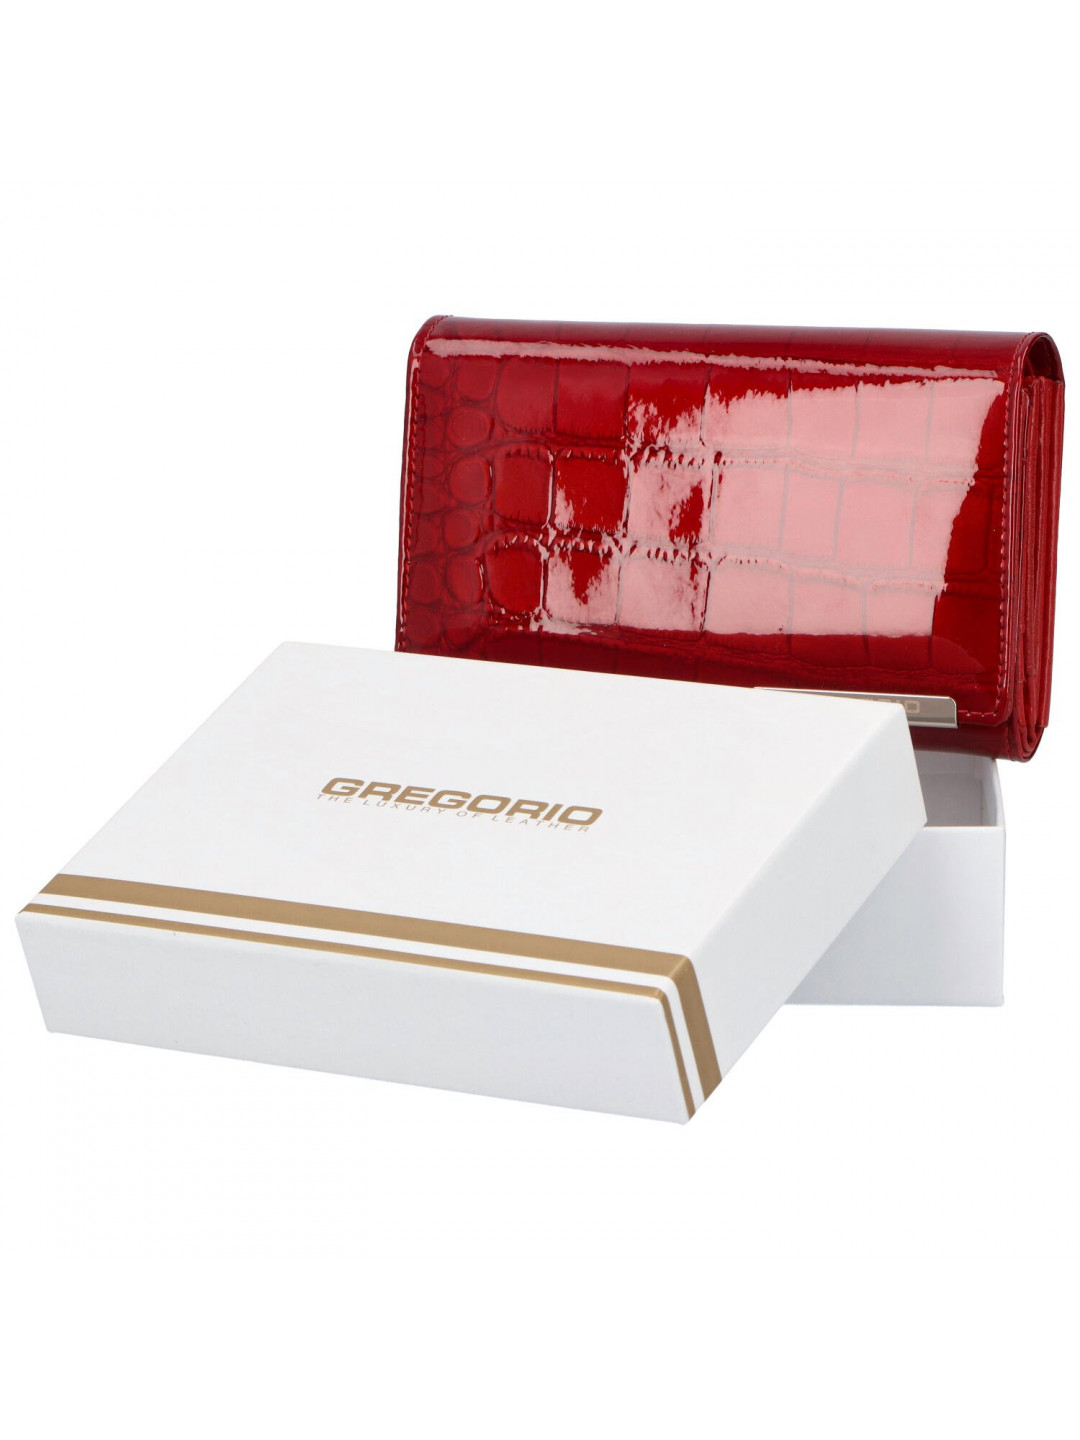 Luxusní dámská kožená peněženka Gregorio Lake červená